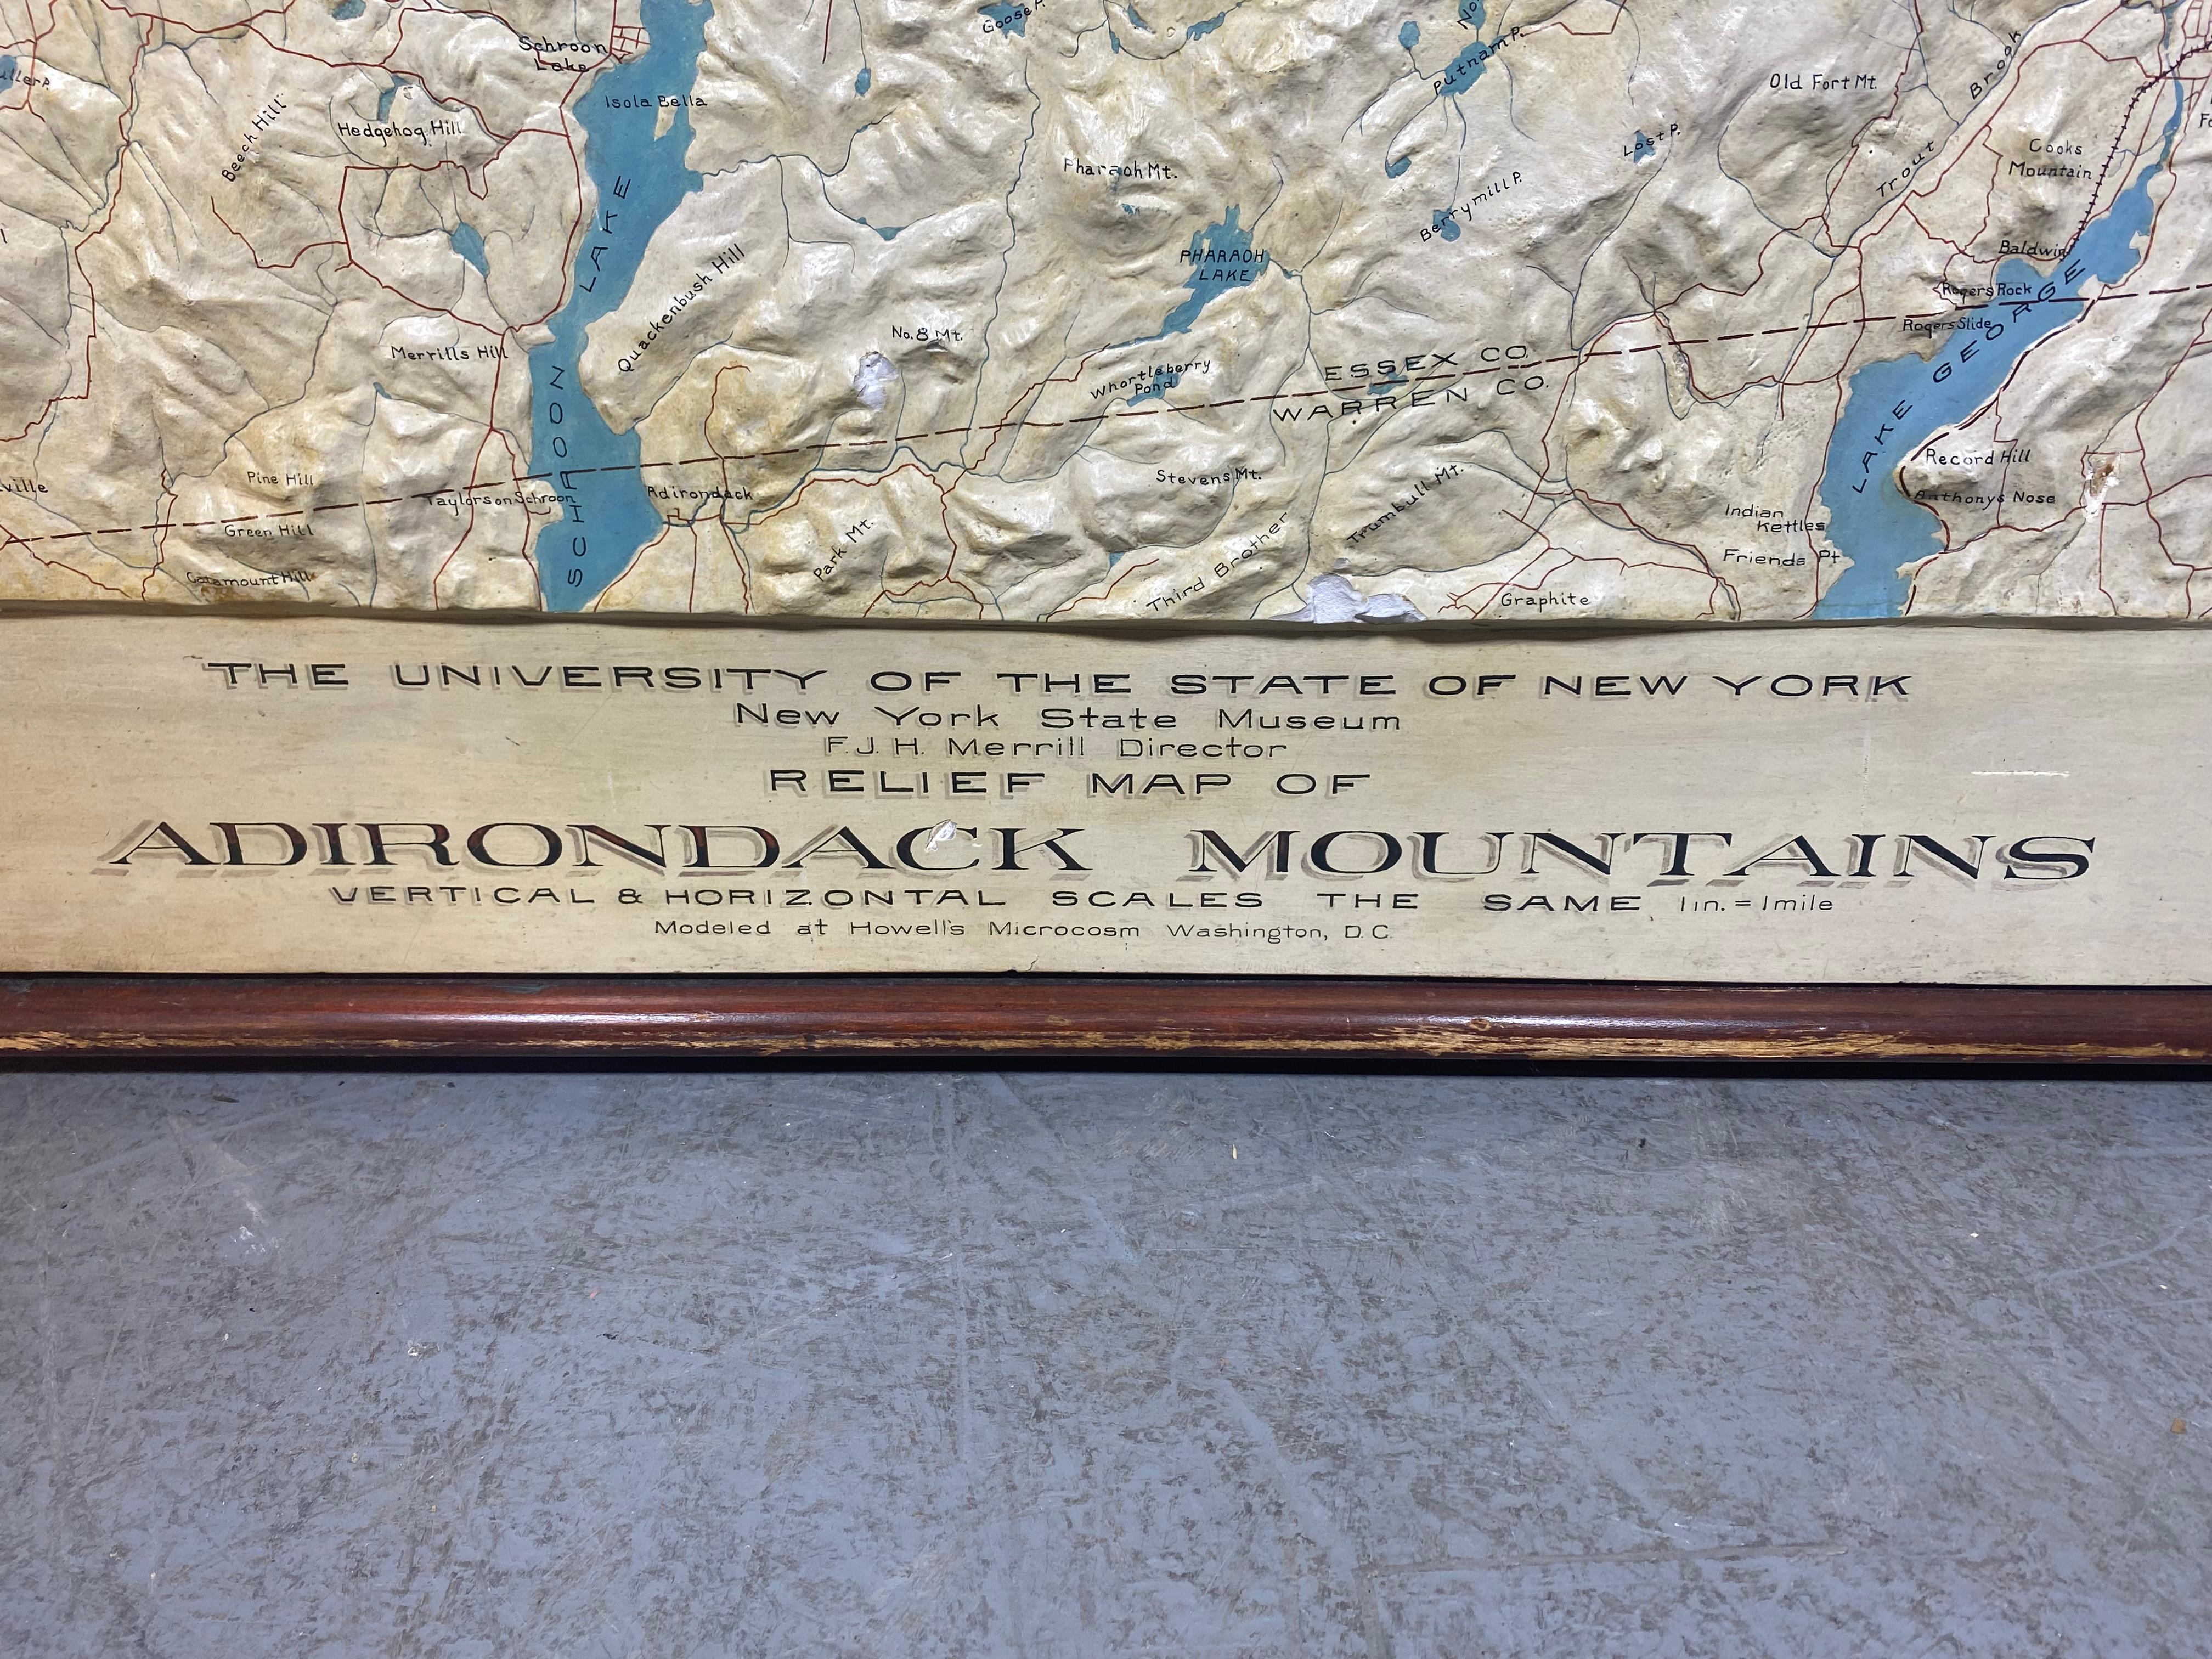 Seltene und frühe Gipsreliefkarte der Adirondack Mountains von der University of the State of New York,  New York State Museum..F J H Merrill Direktor,,,modelliert von Howell's Microcosm,,, Atemberaubendes Beispiel,, meine Vermutung aus der Wende